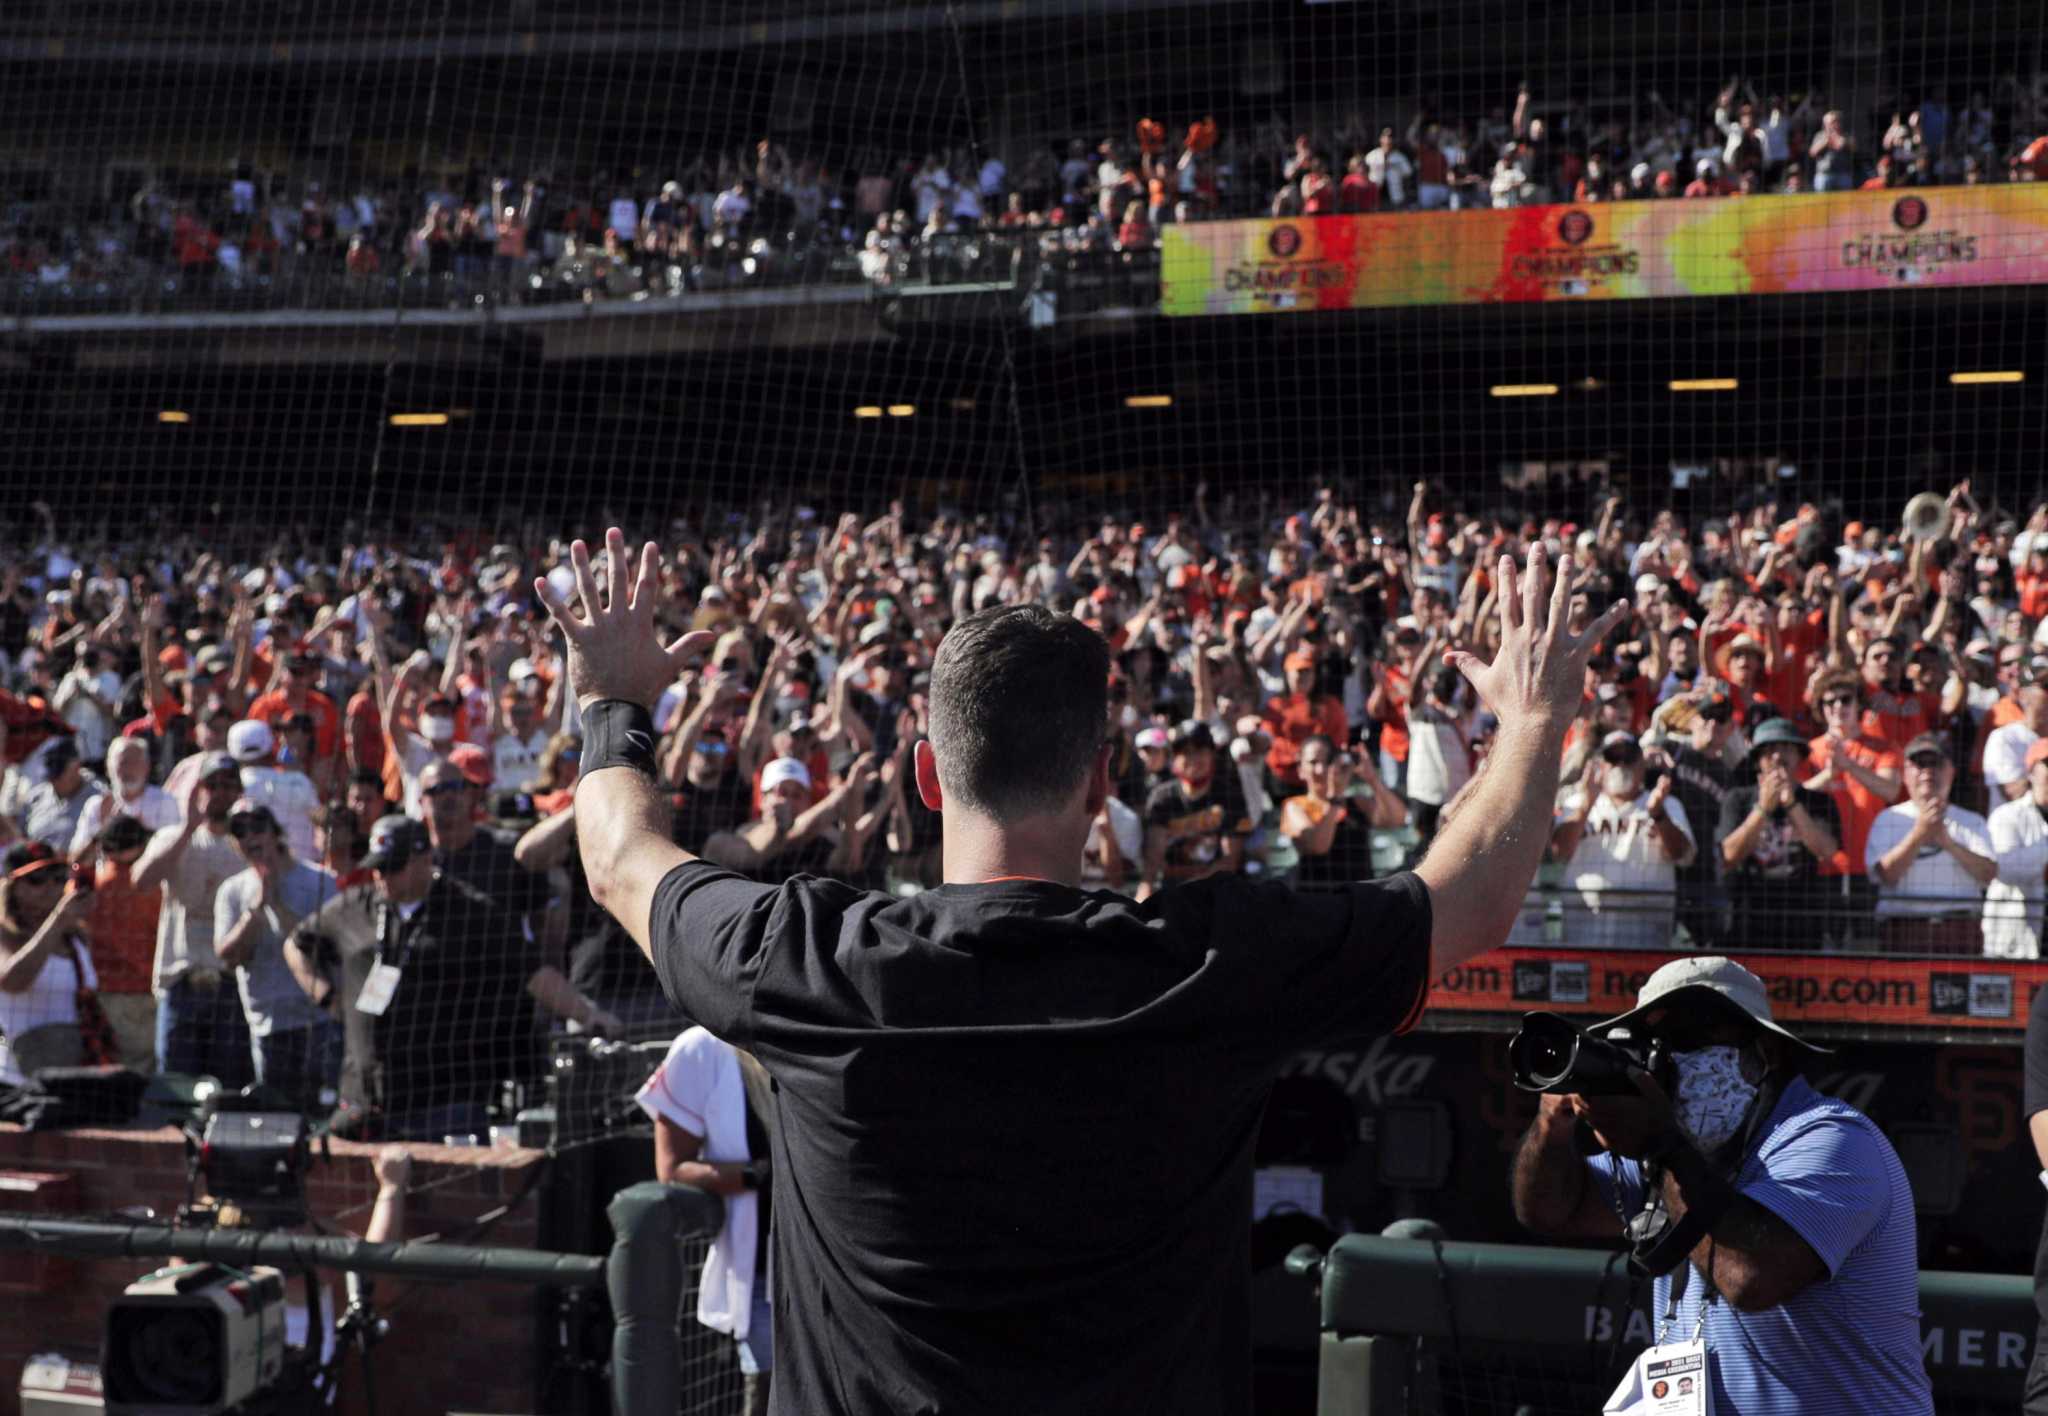 Excited Fans Descend On Dodger Stadium Thursday To Get World